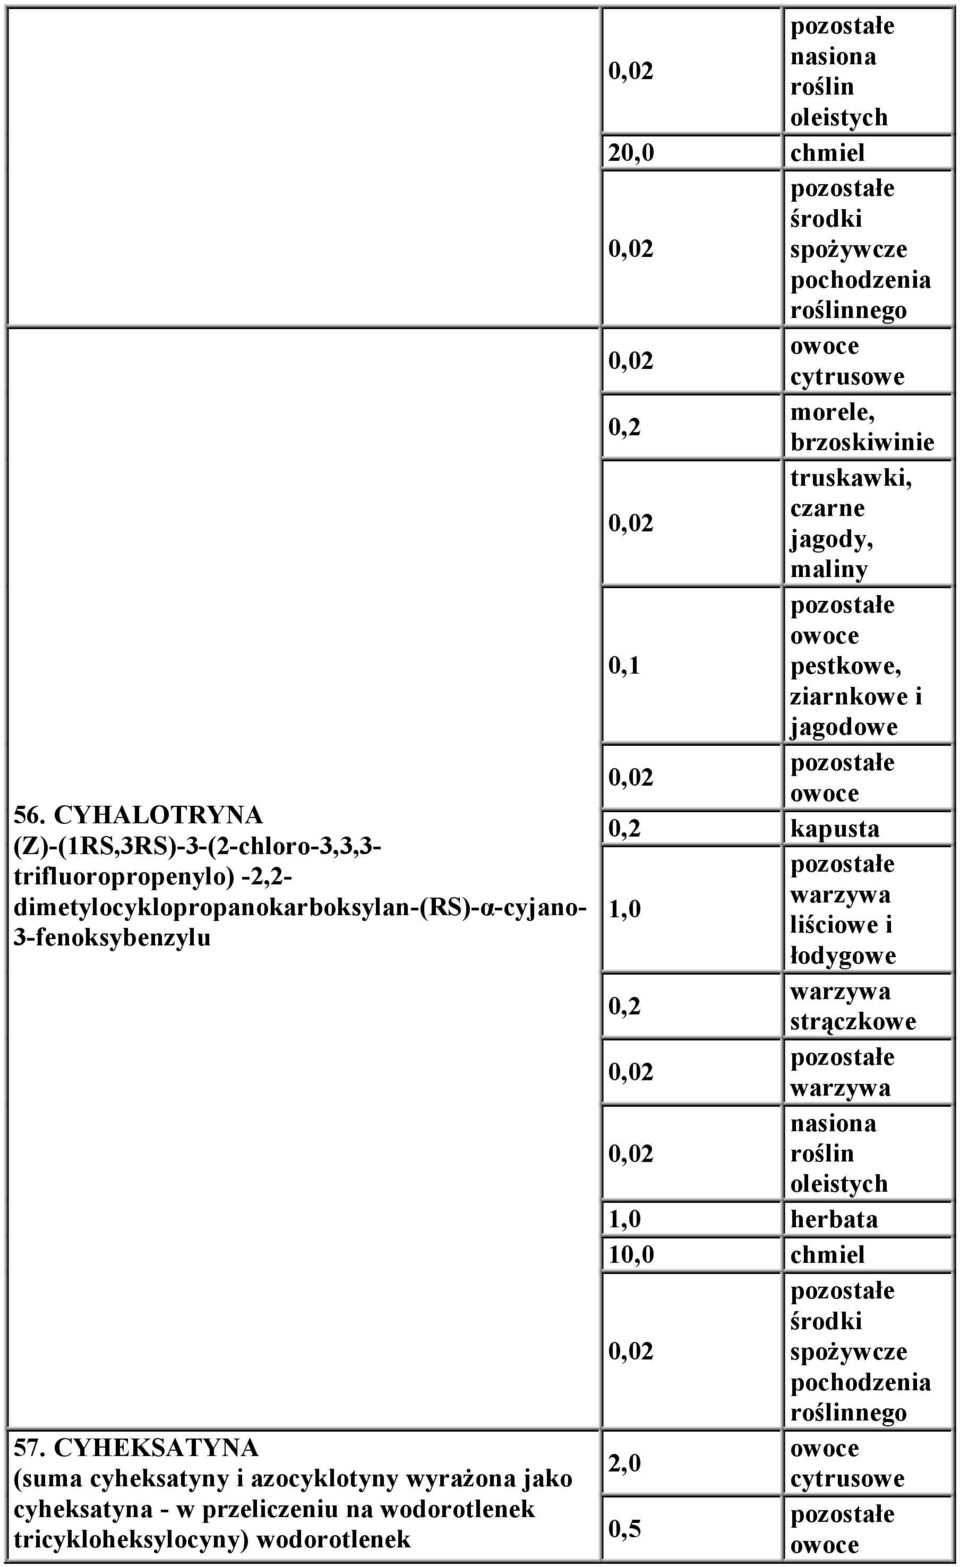 CYHEKSATYNA (suma cyheksatyny i azocyklotyny wyrażona jako cyheksatyna - w przeliczeniu na wodorotlenek